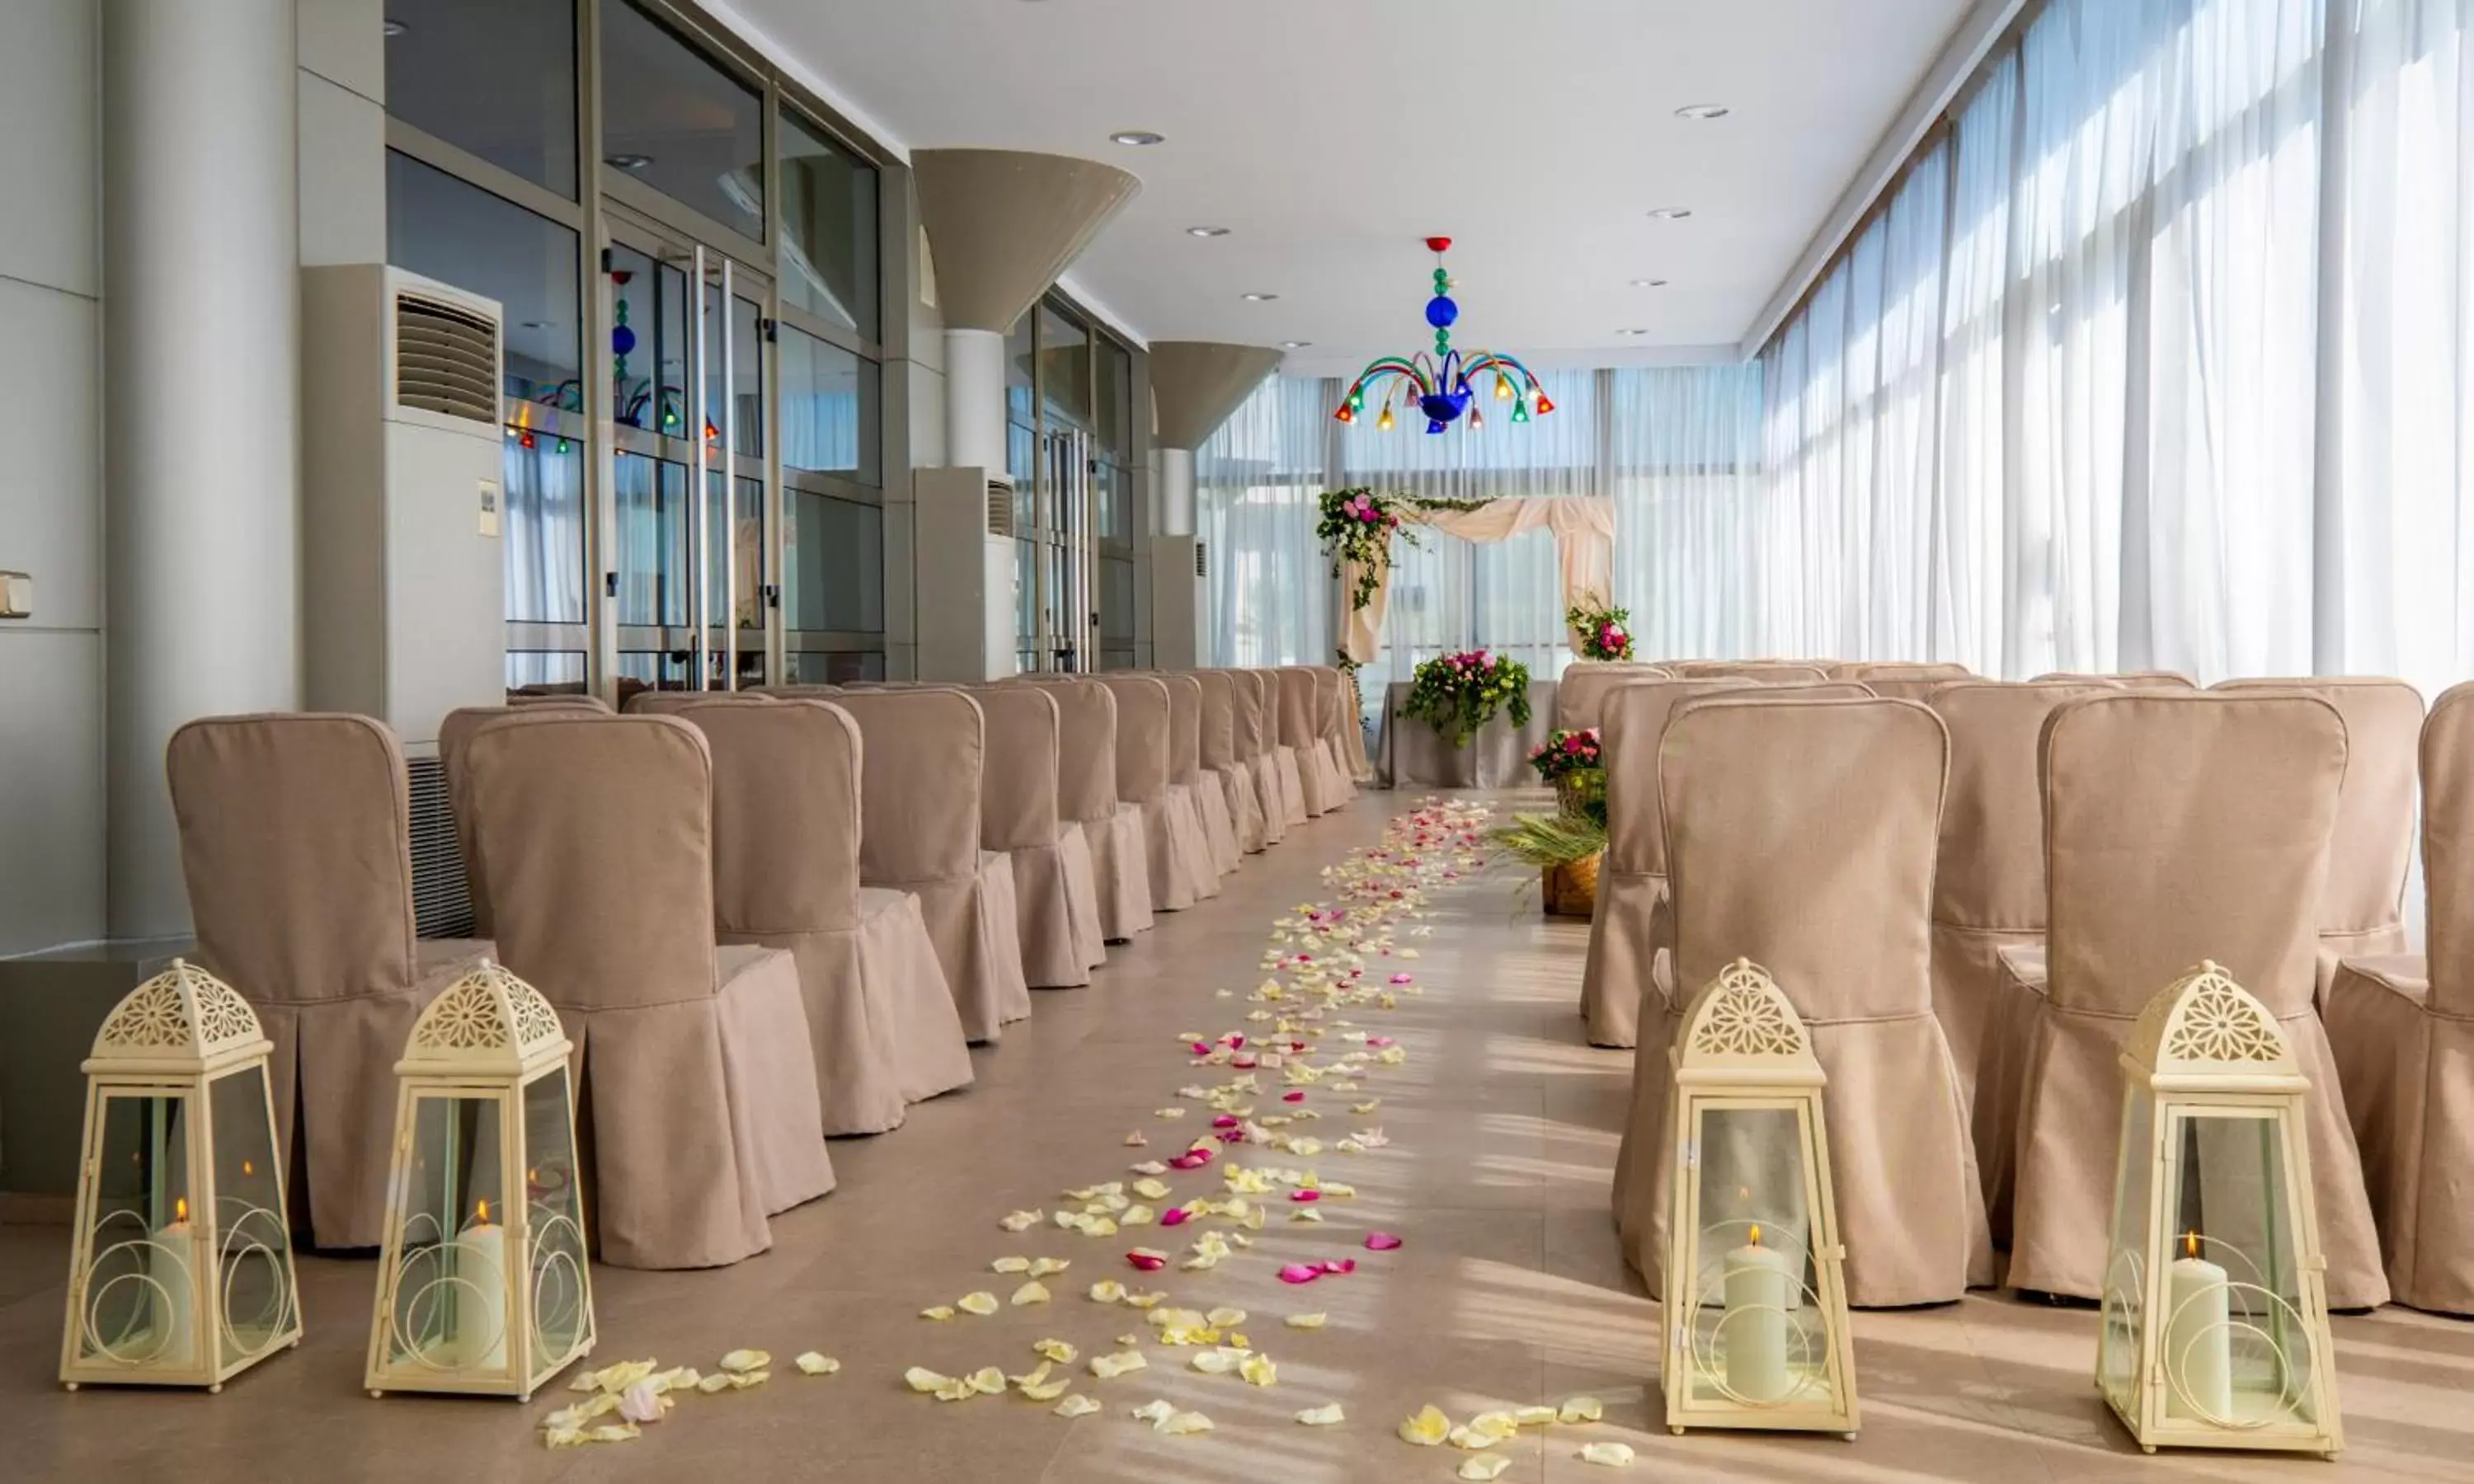 Banquet/Function facilities, Banquet Facilities in Gran Hotel Attica21 Las Rozas